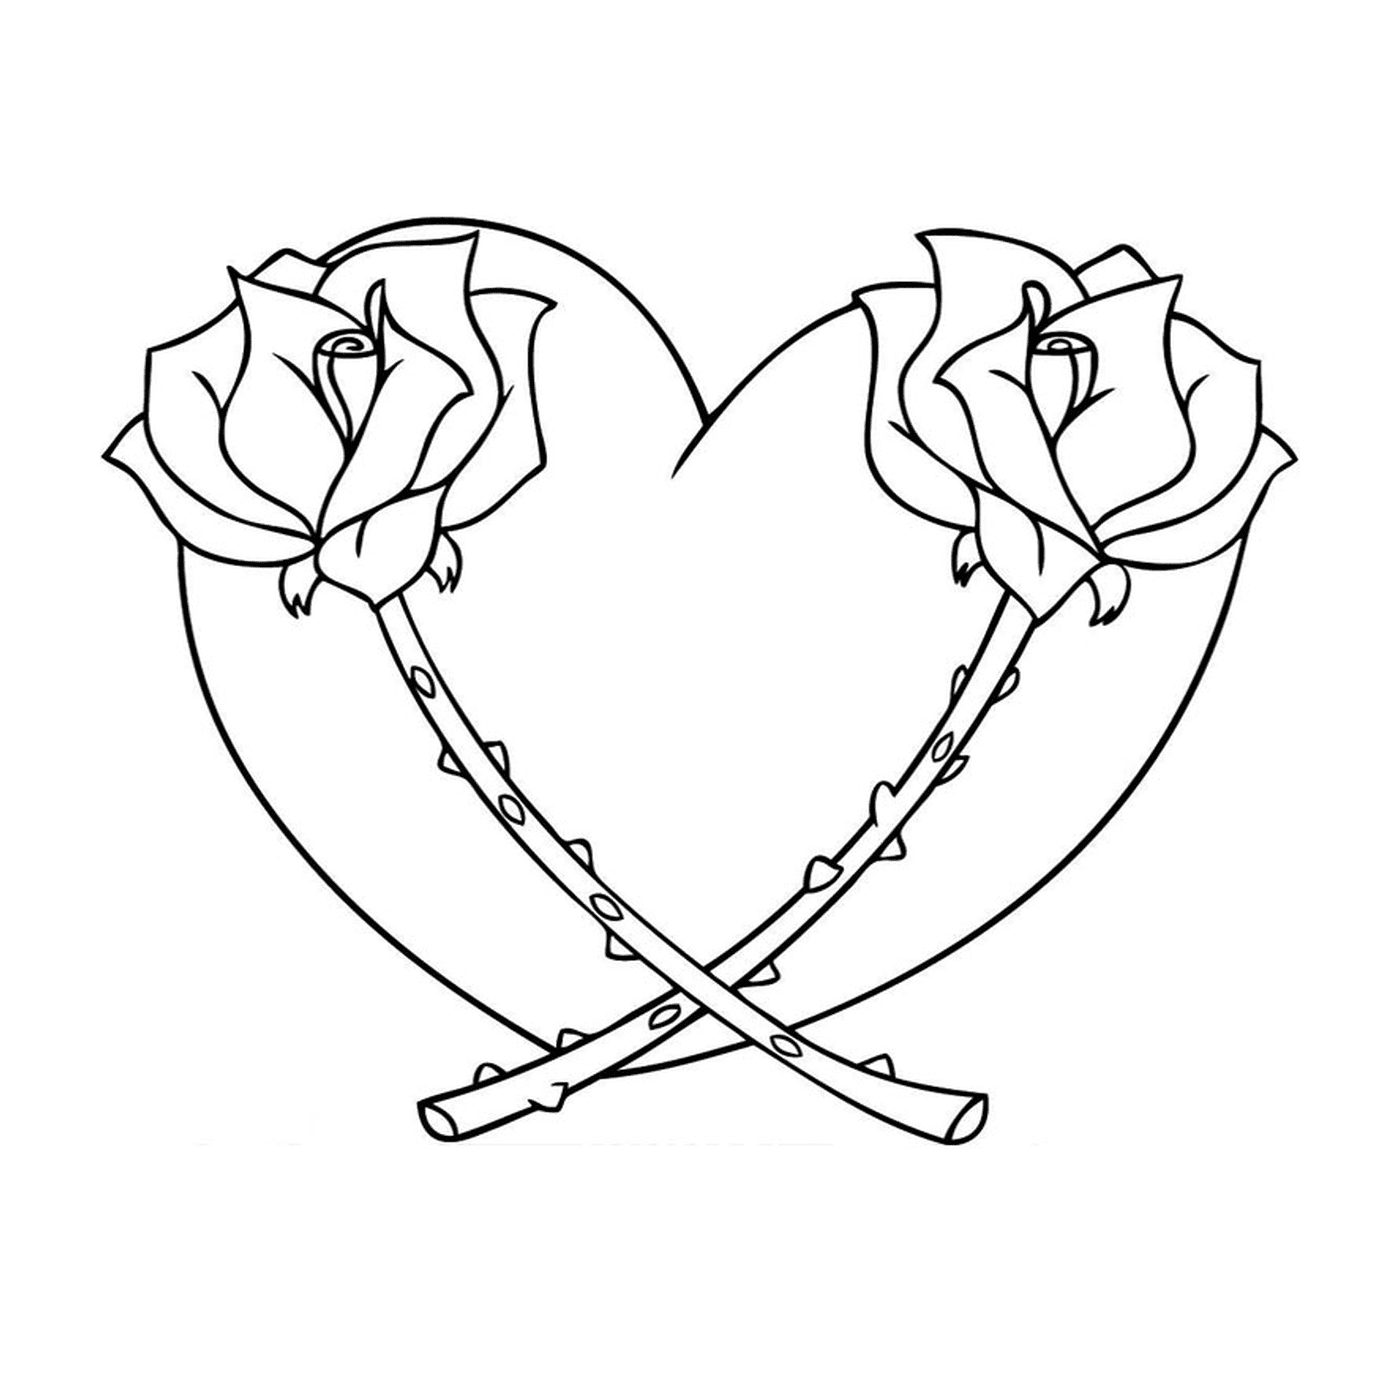  Две сердечные розы 